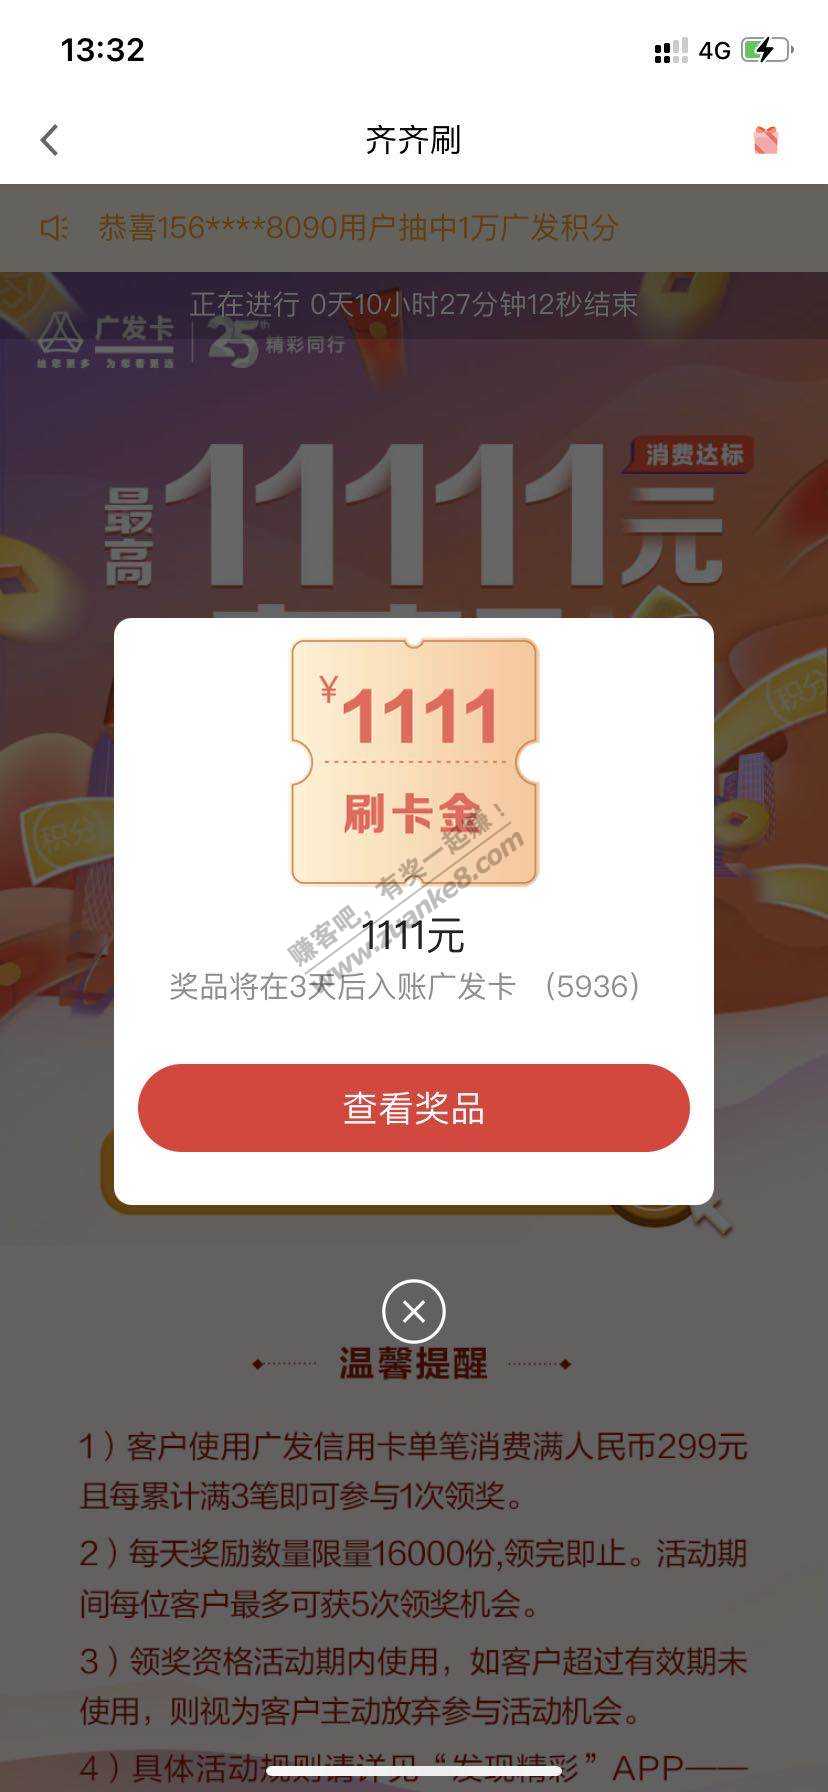 今年中的最大的毛-广发1111-惠小助(52huixz.com)